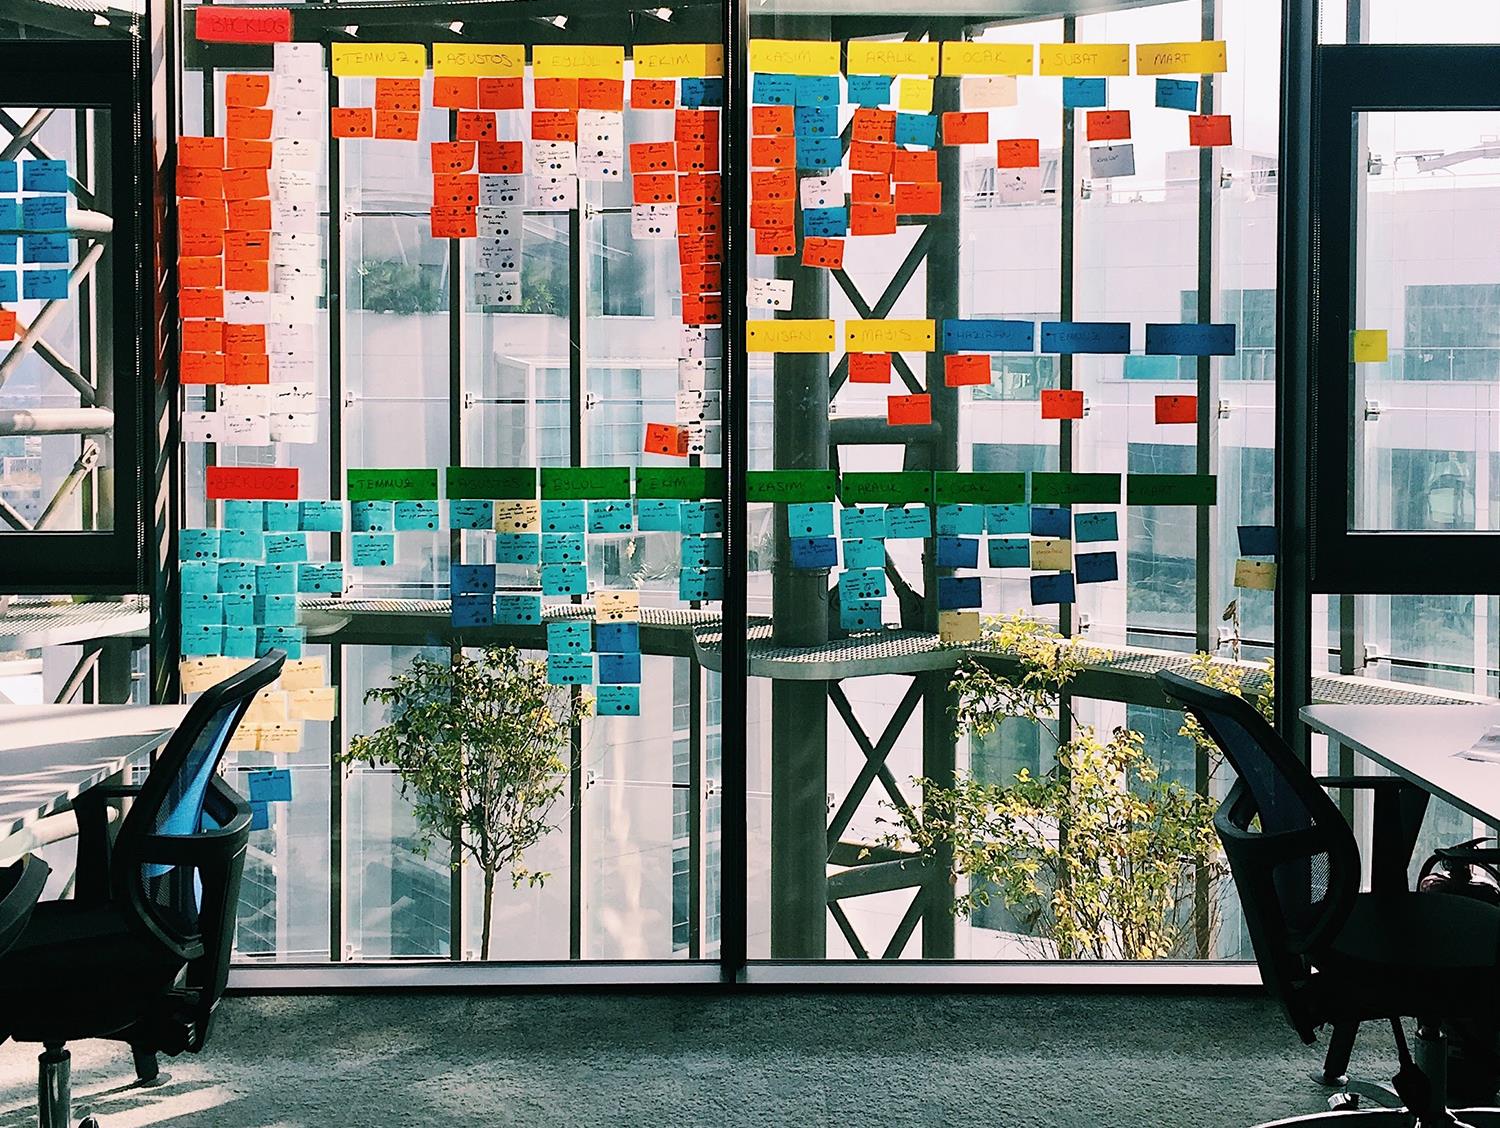 Fensterscheibe in einem Büro, an dem viele verschiedenfarbige Klebezettel hängen.